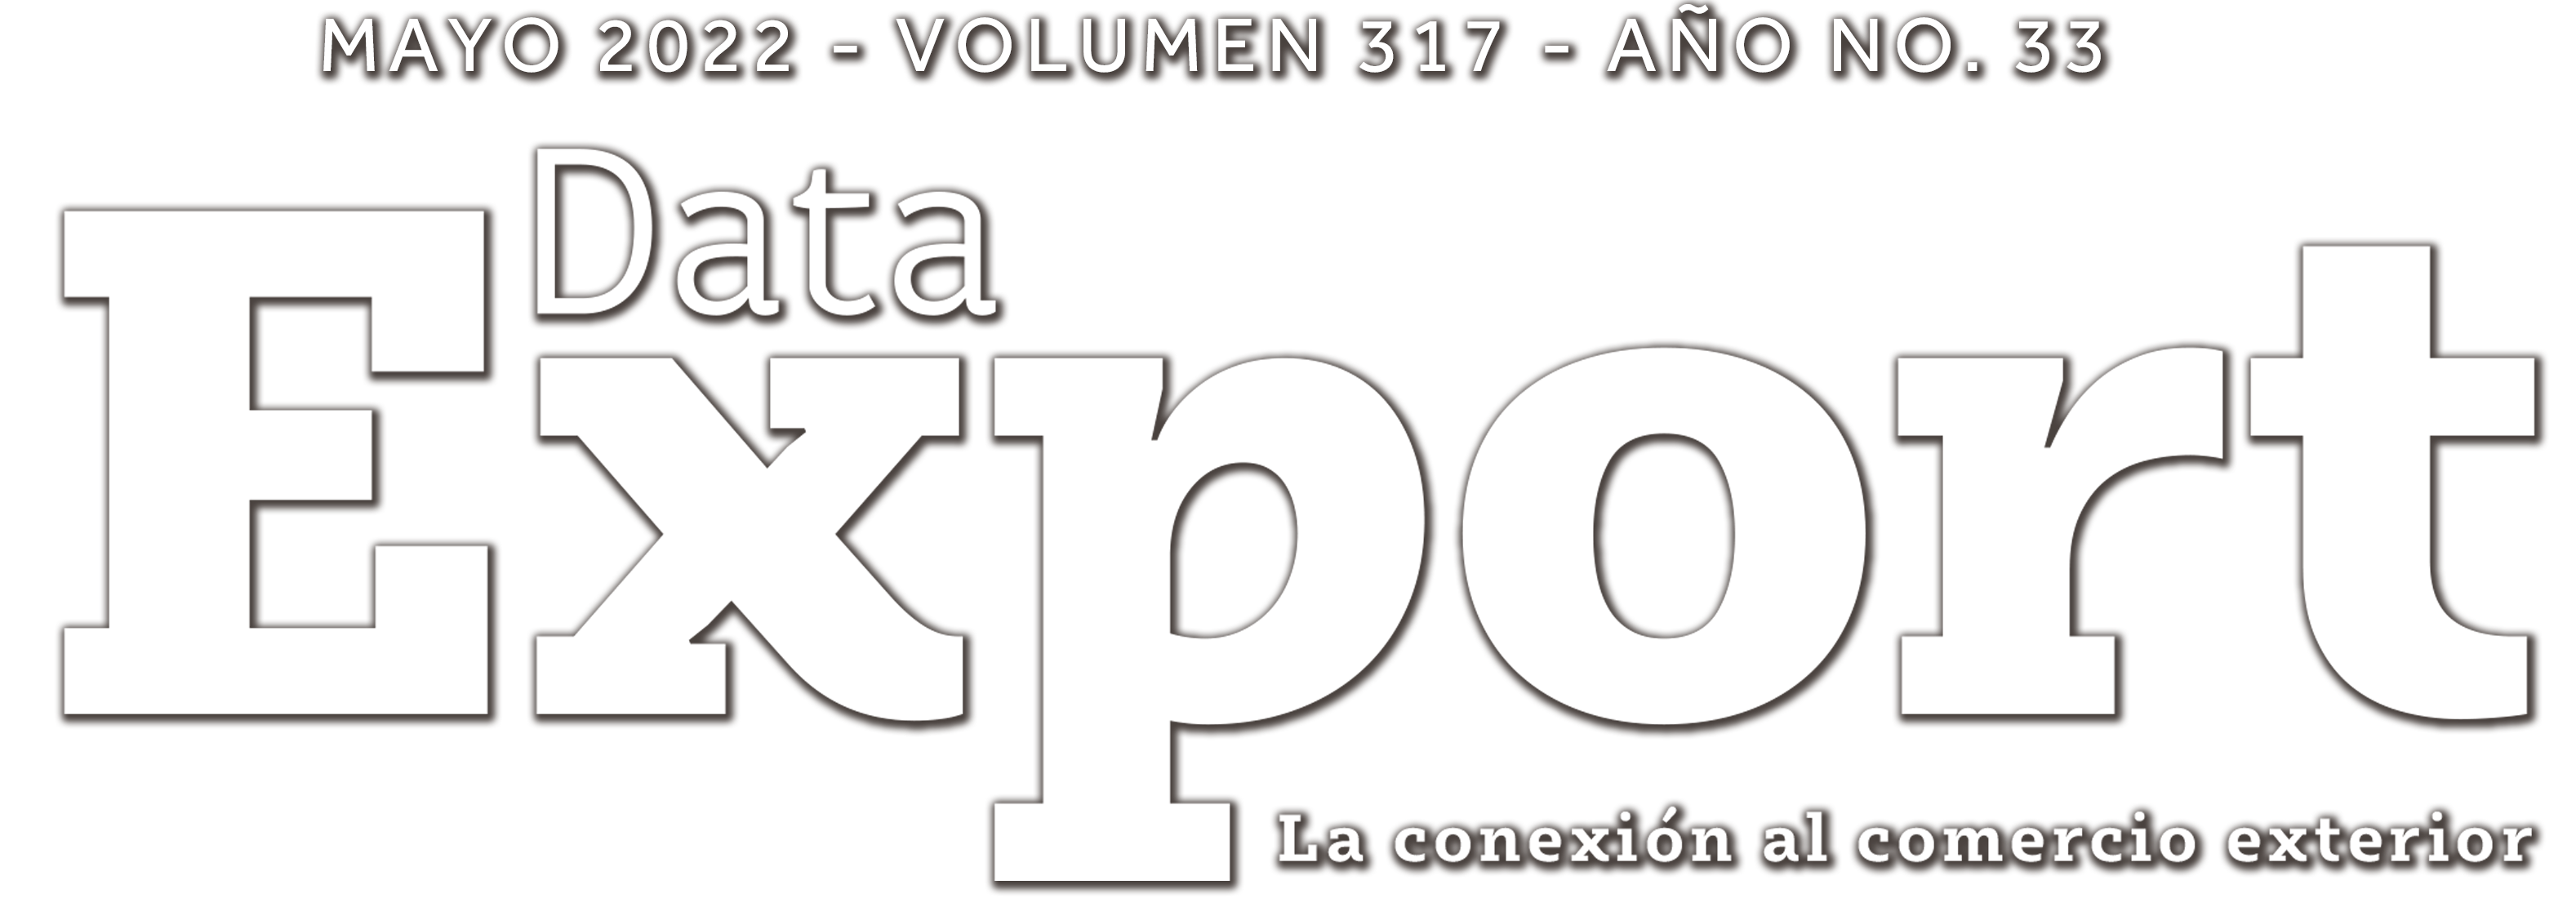 DataExport Revista Digital